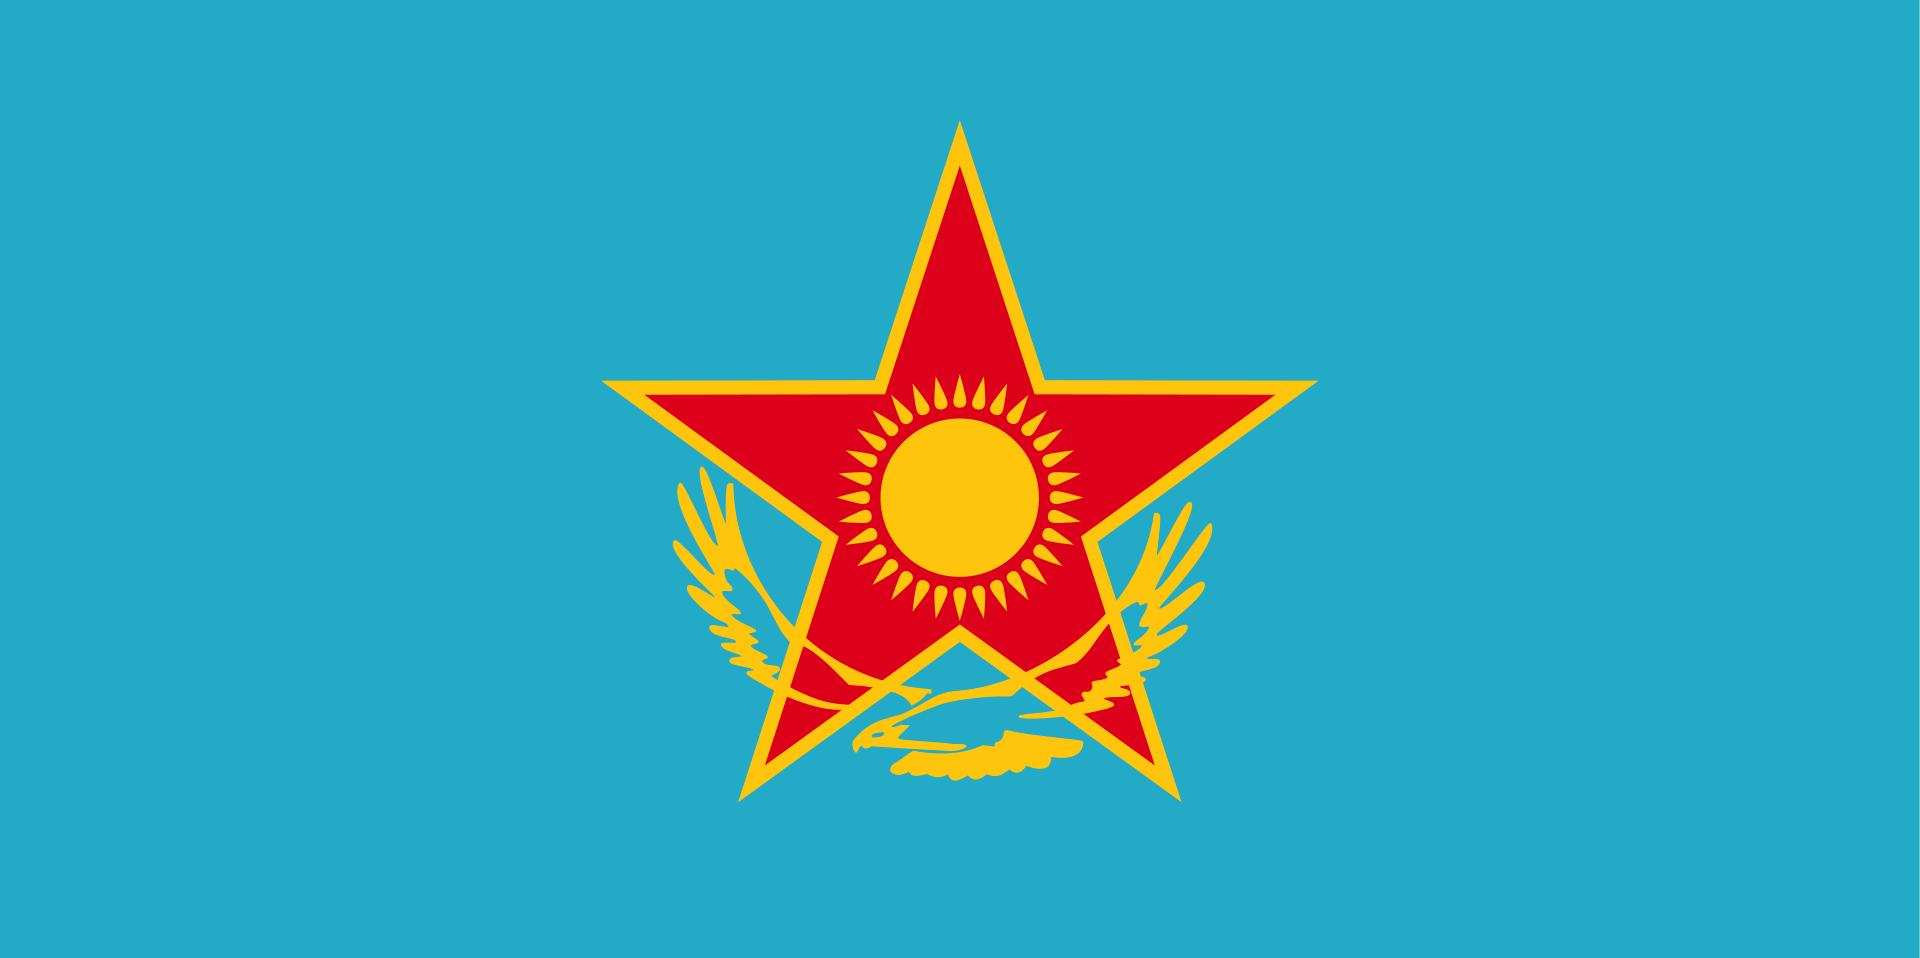 哈萨克斯坦军徽哈萨克斯坦全称哈萨克斯坦共和国,首都是阿斯塔纳,领土